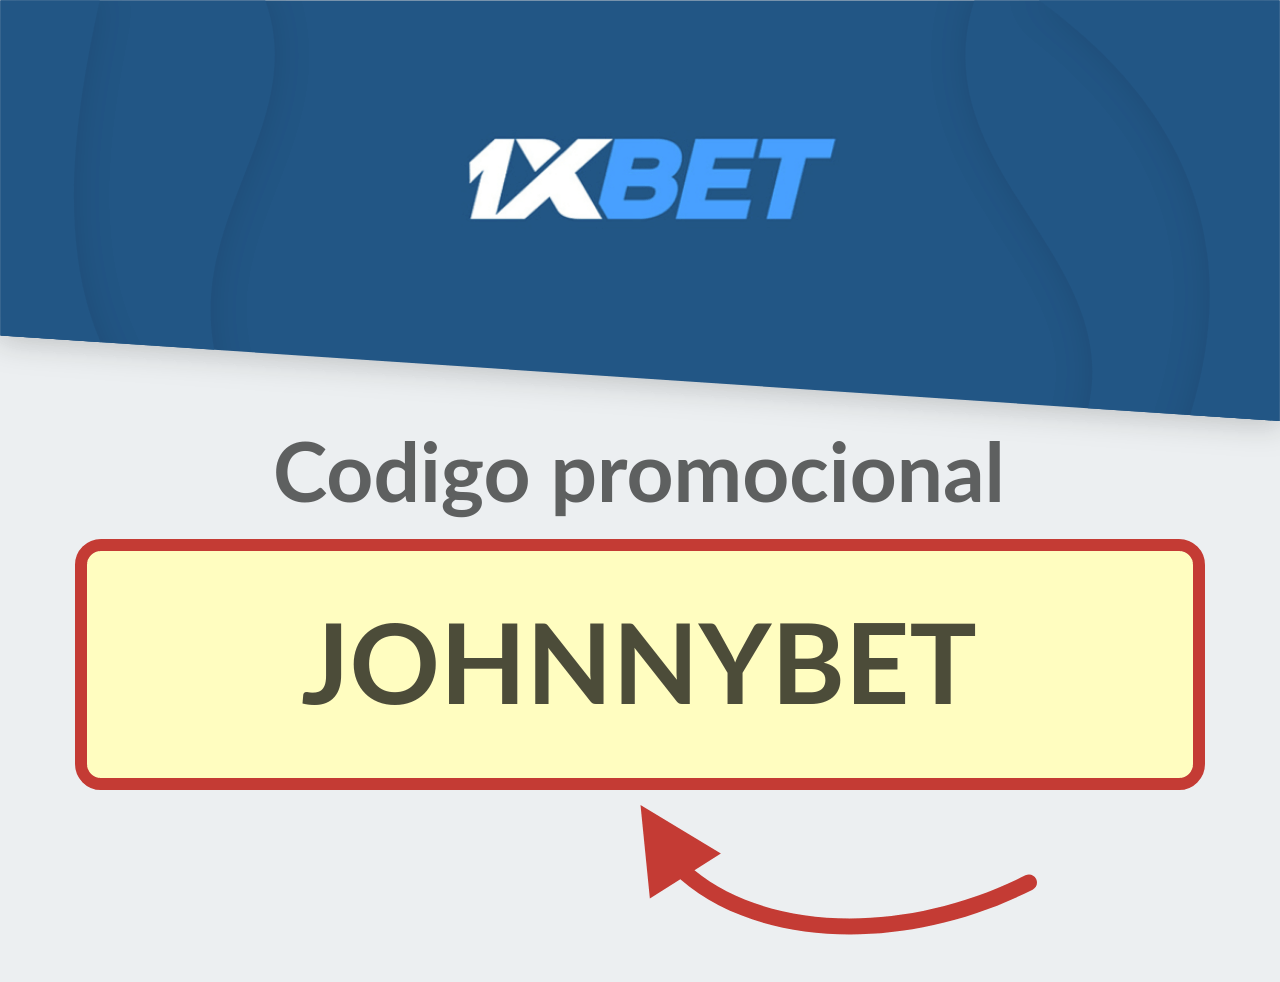 Código Promocional 1XBET Colombia: JOHNNYBET